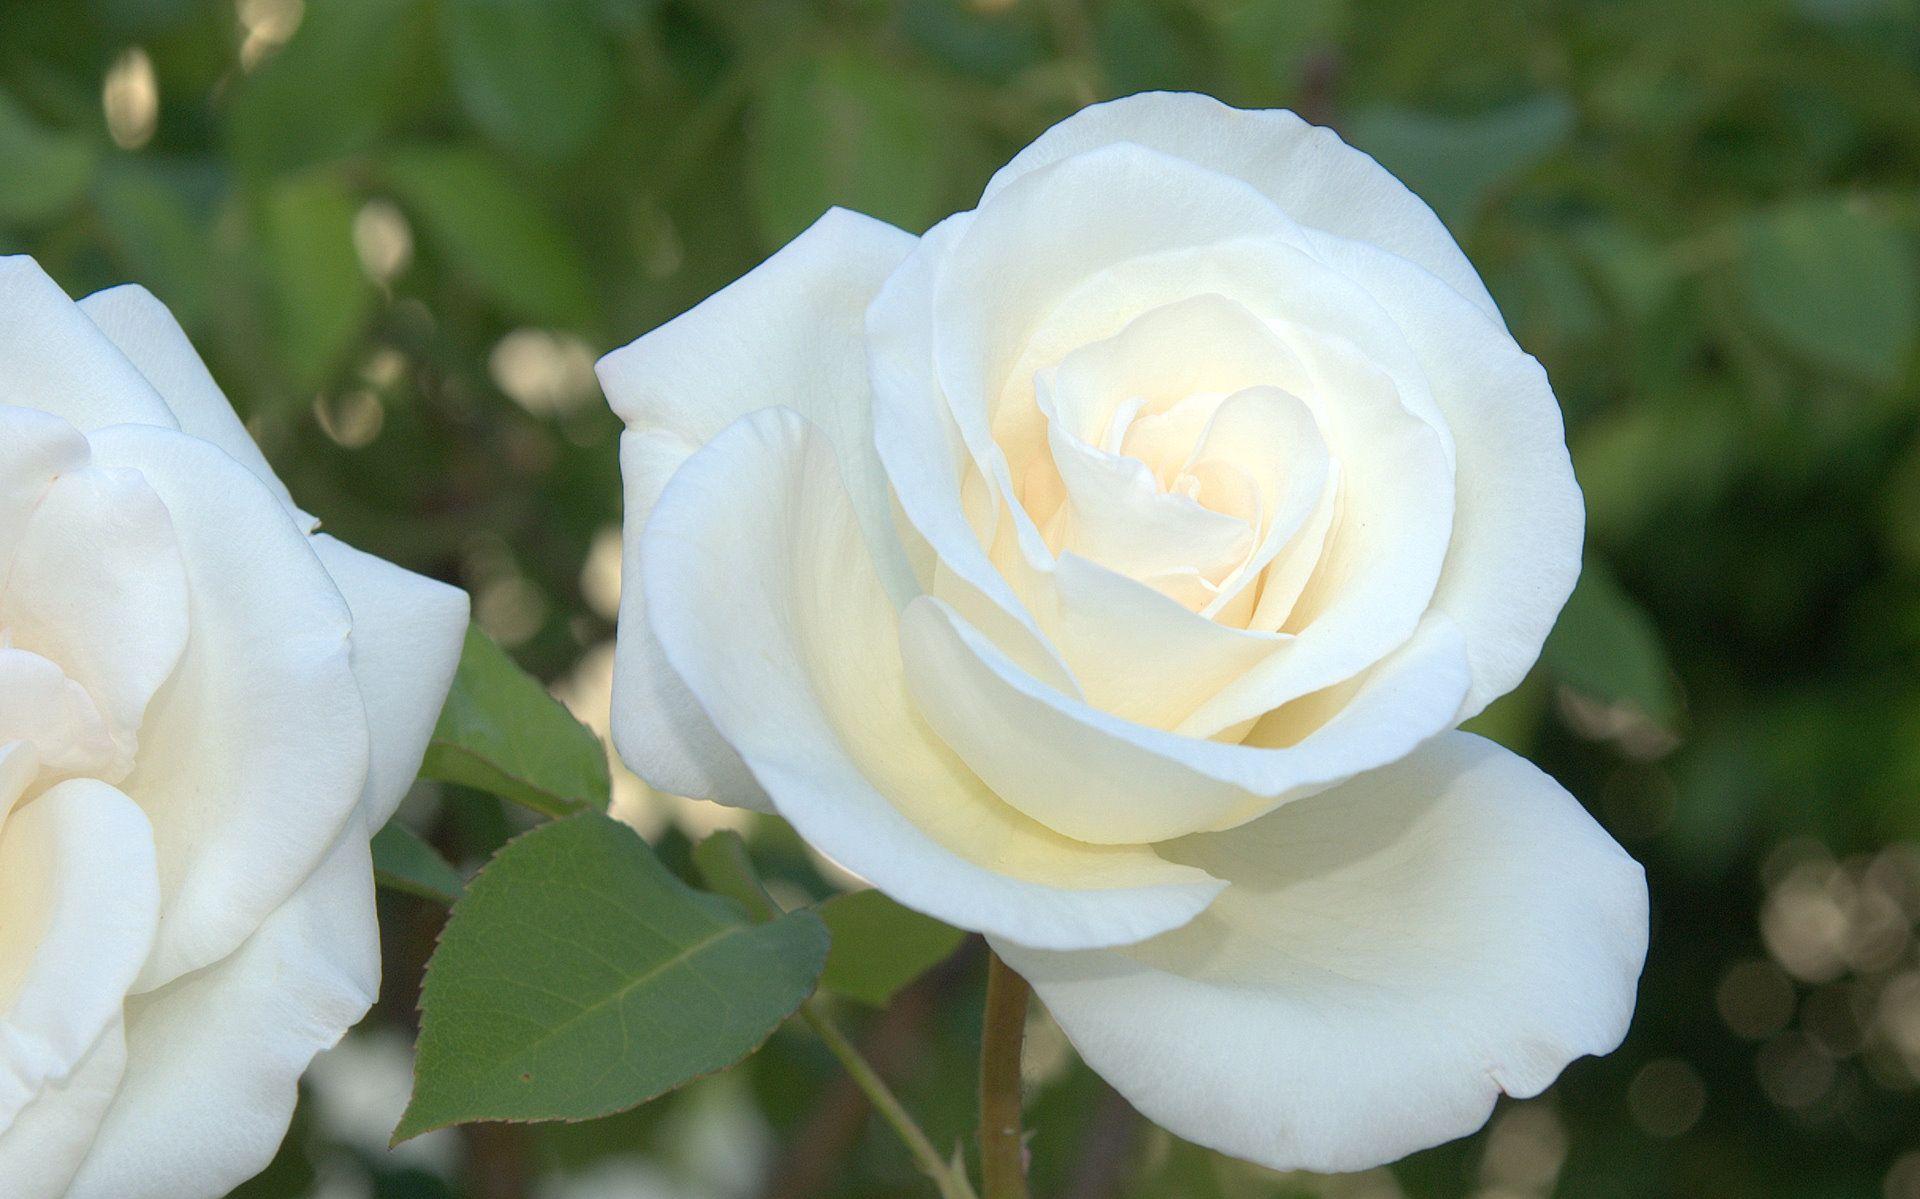 white rose